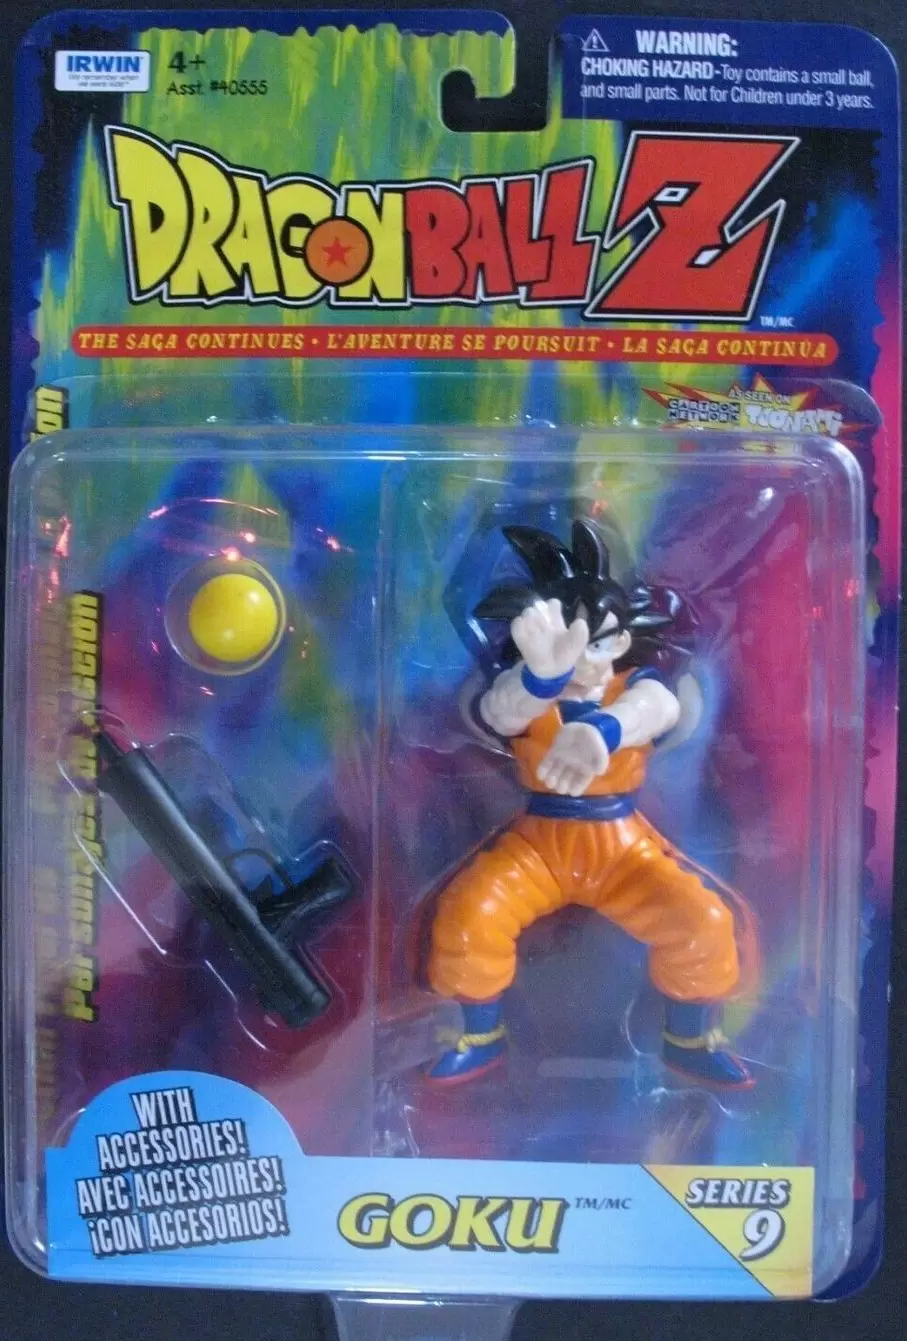 Irwin Toy - Series 9 - Goku